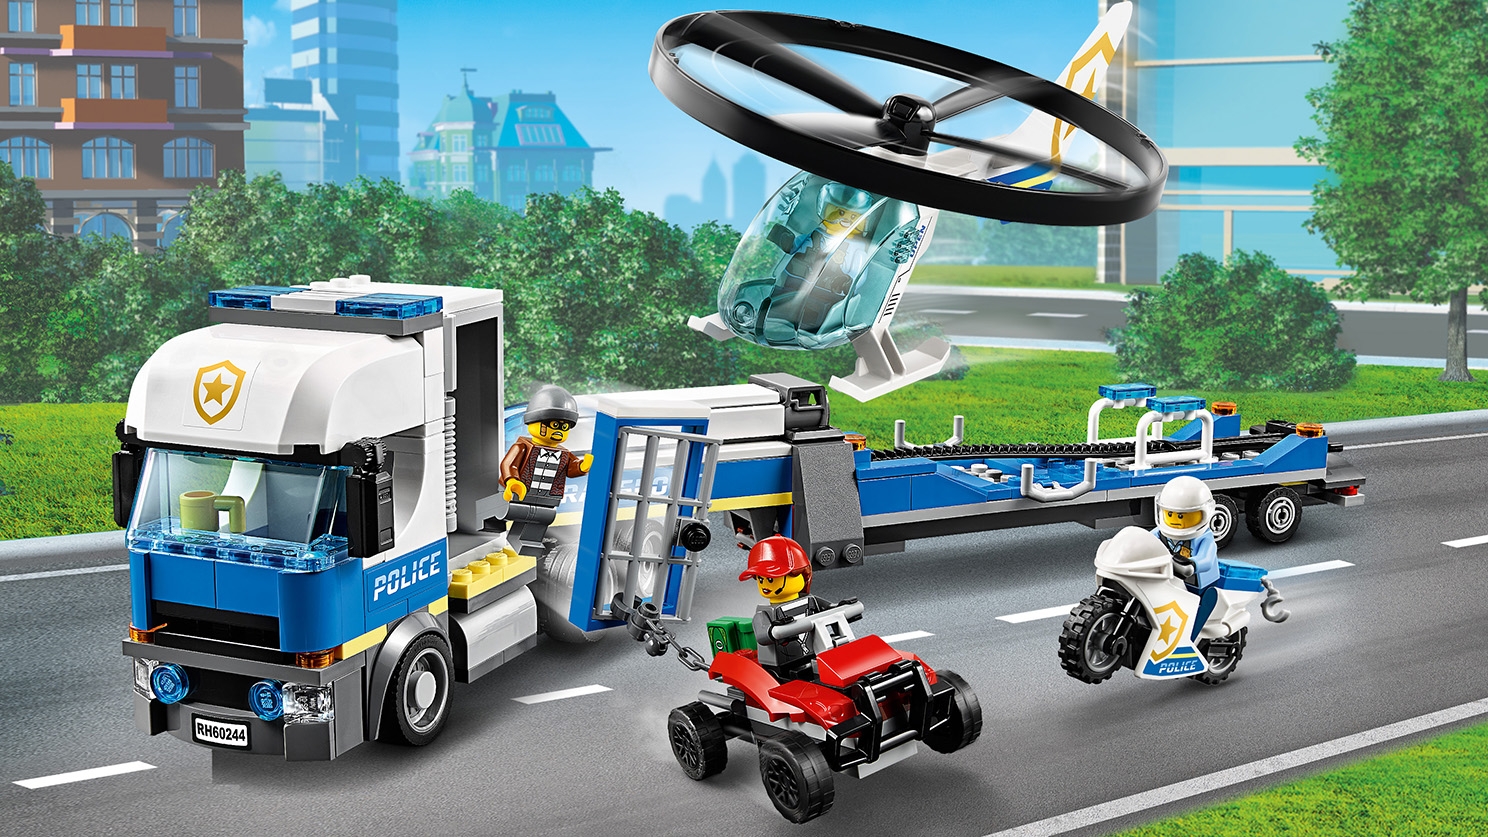 petulance hver dag is Police Helicopter Transport 60244 - LEGO® City Sets - LEGO.com for kids